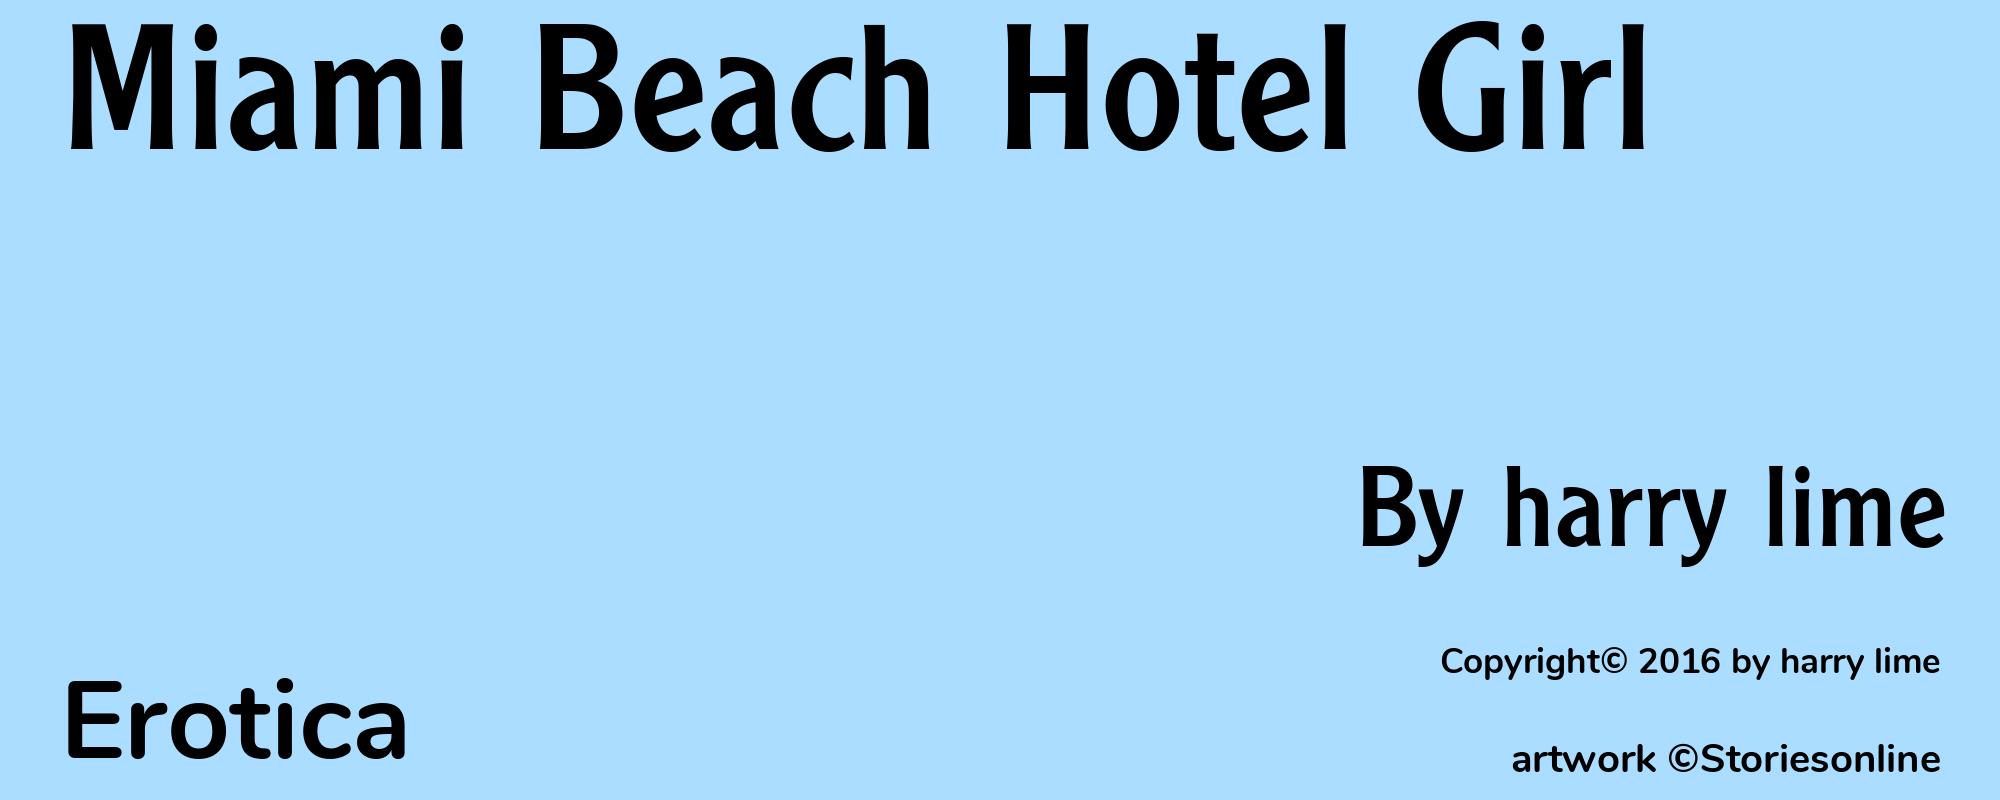 Miami Beach Hotel Girl - Cover